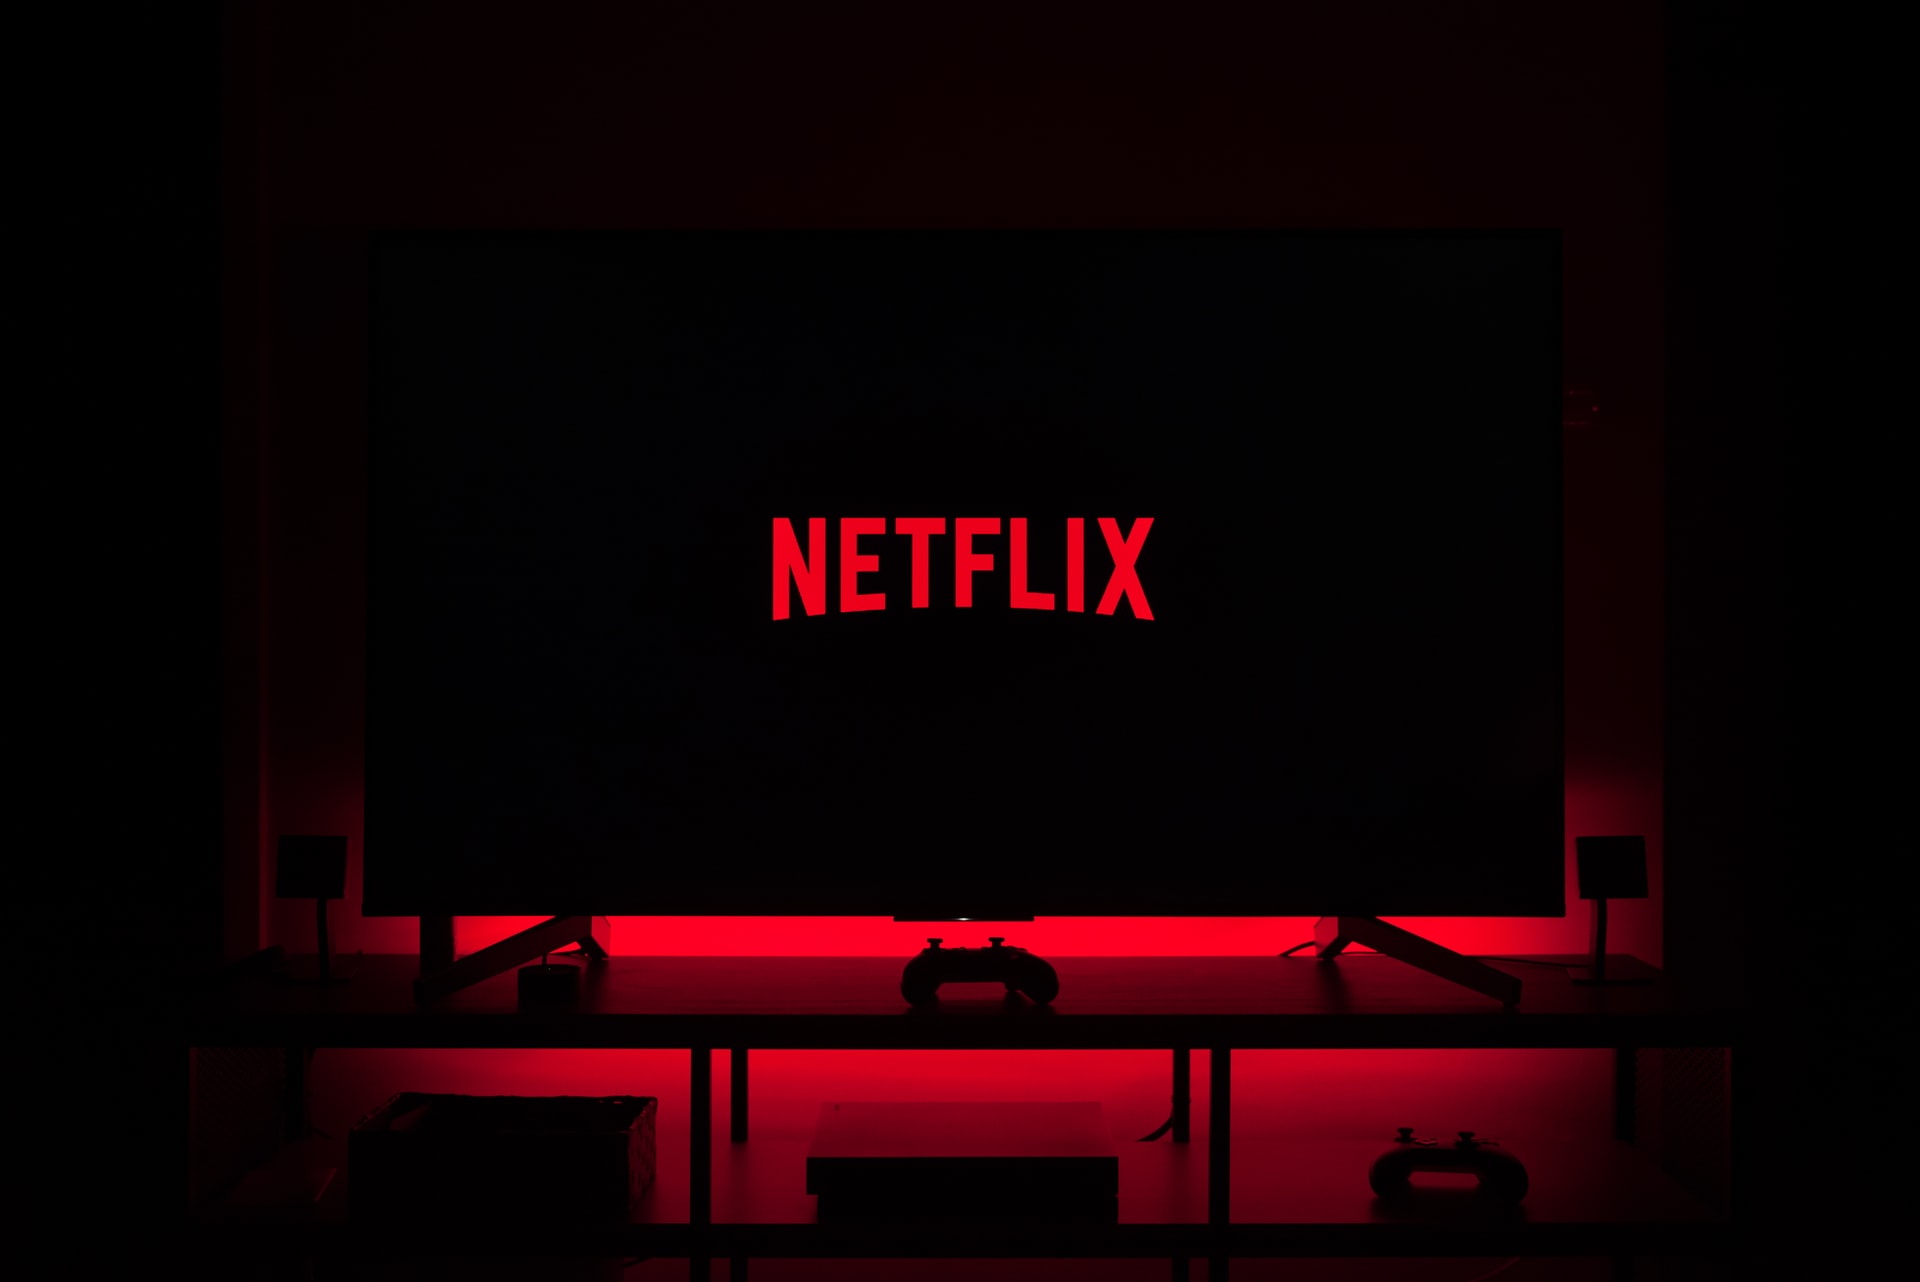 Netflix nabył prawa do streamingu 7 ukraińskich filmów: co zostanie pokazane